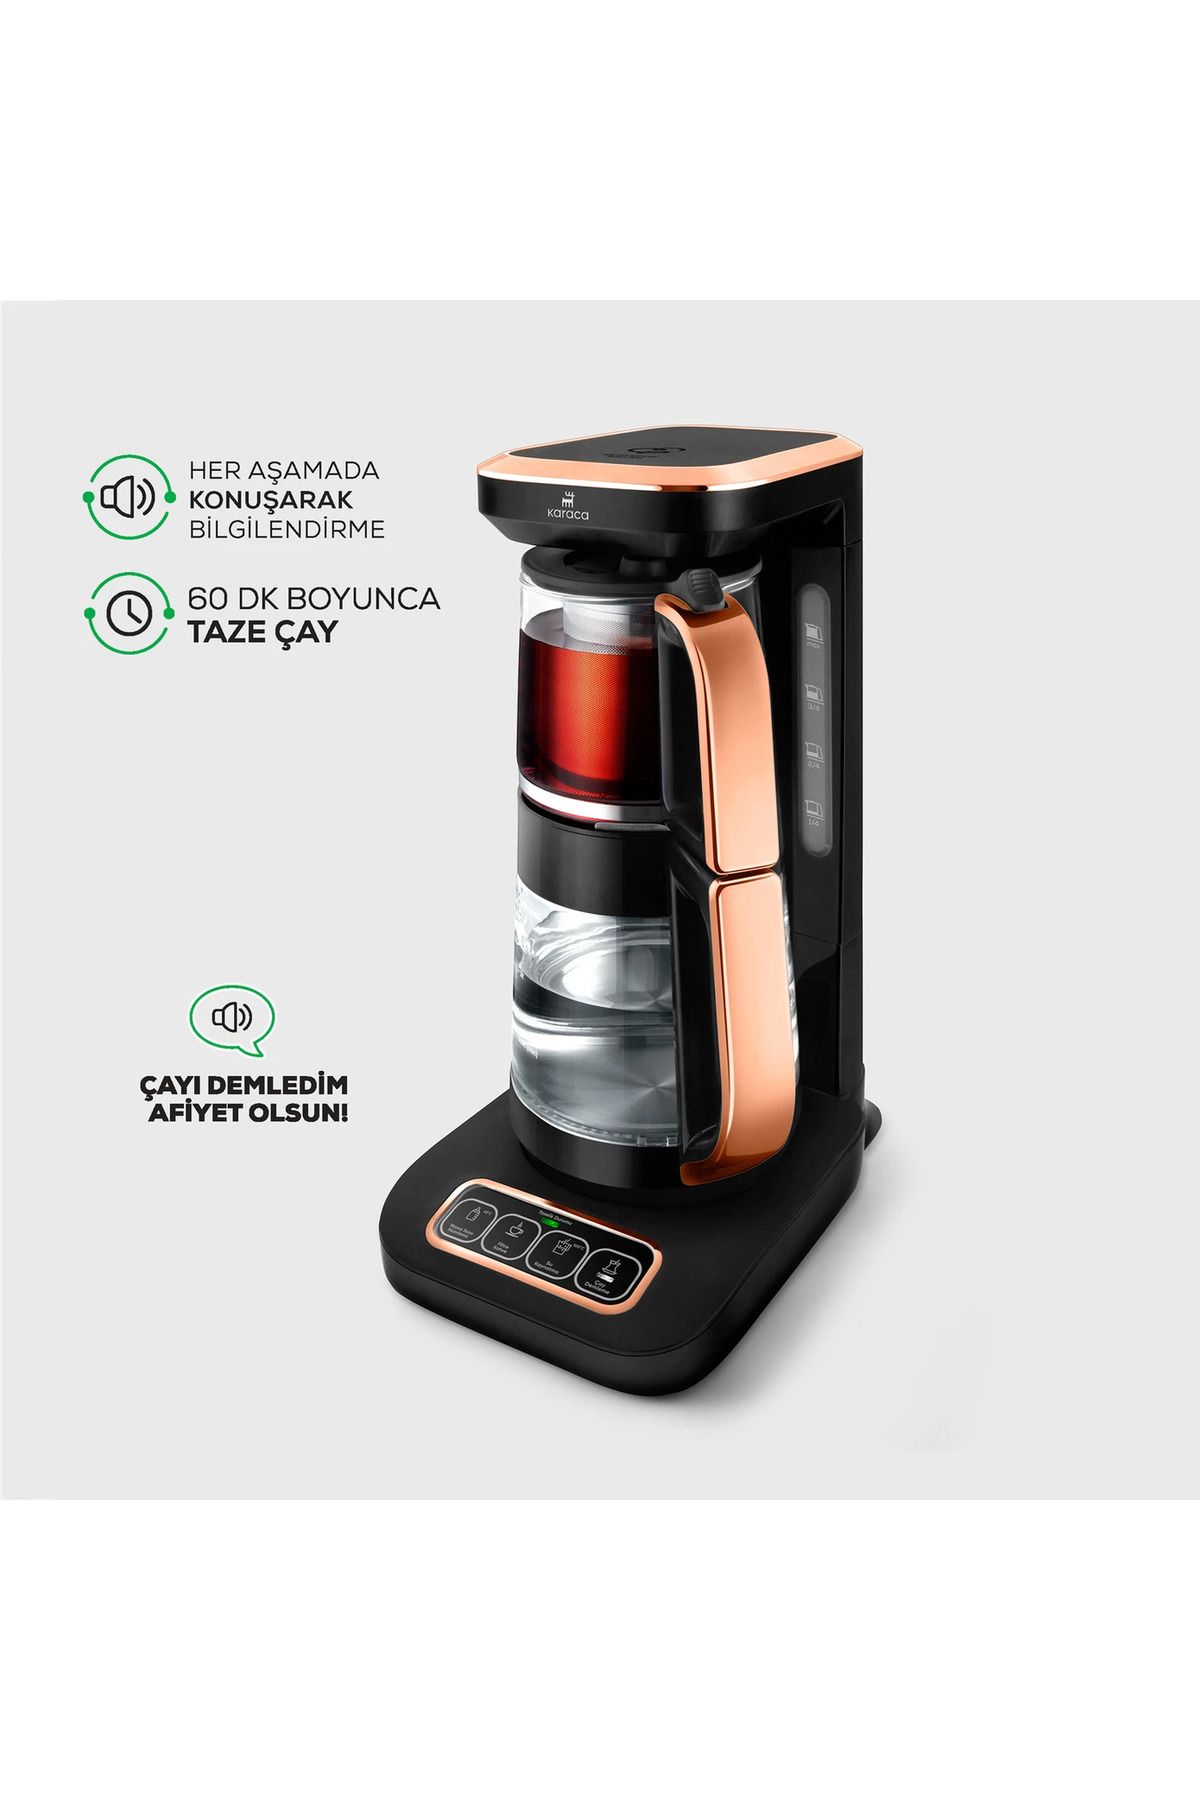 Karaca Çaysever Robotea Pro 4 in 1 Konuşan Otomatik Cam Çay Mama Filtre Kahve Makinesi 2500W